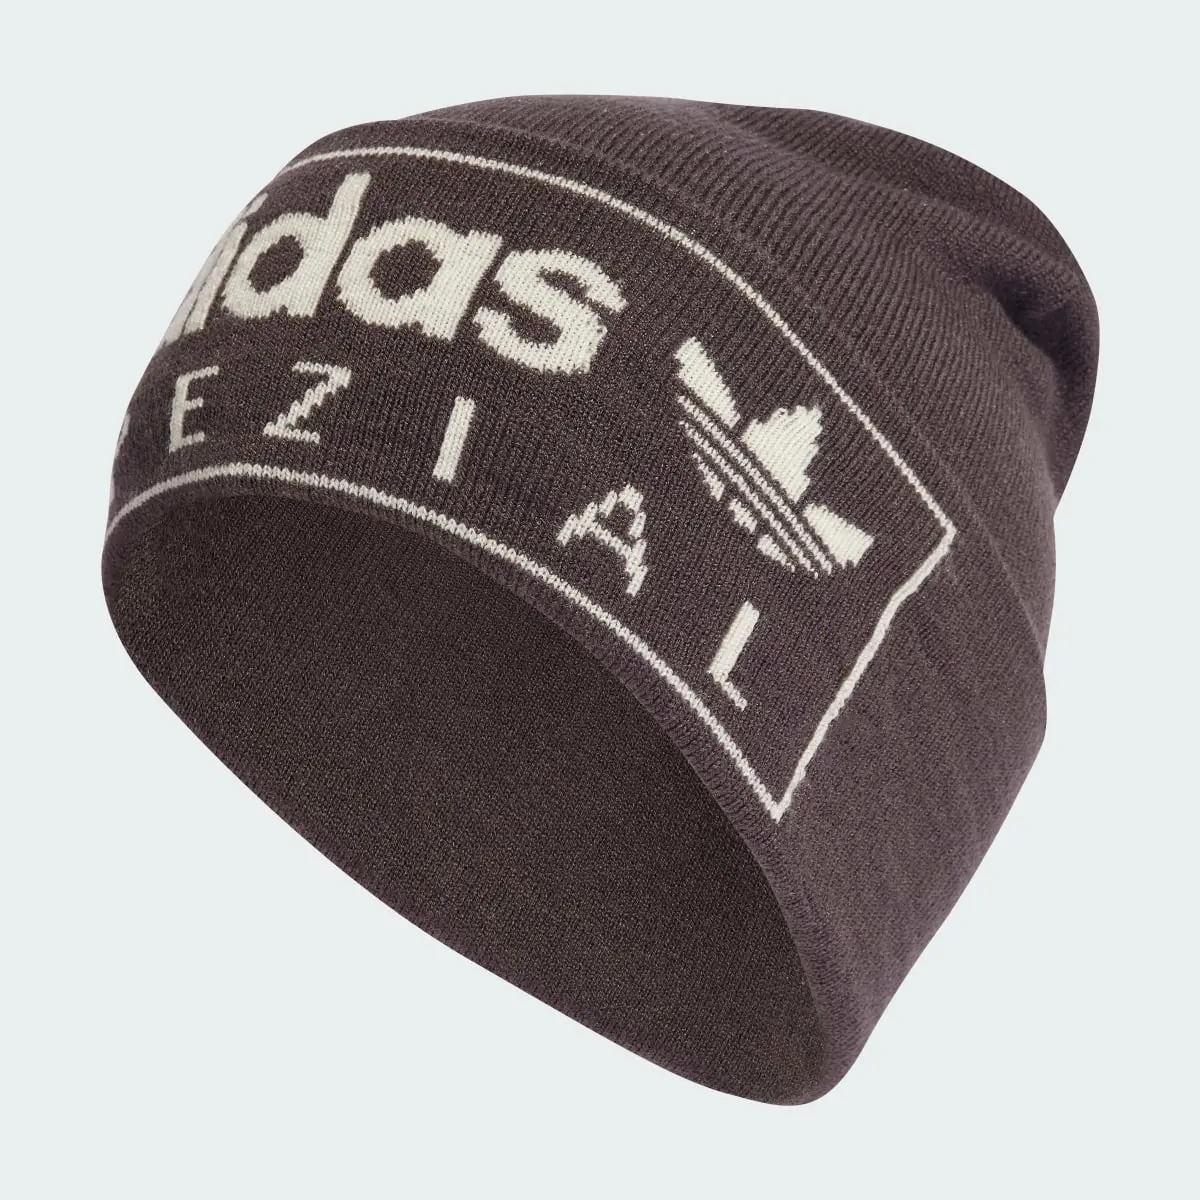 Adidas Spezial Hat. 2